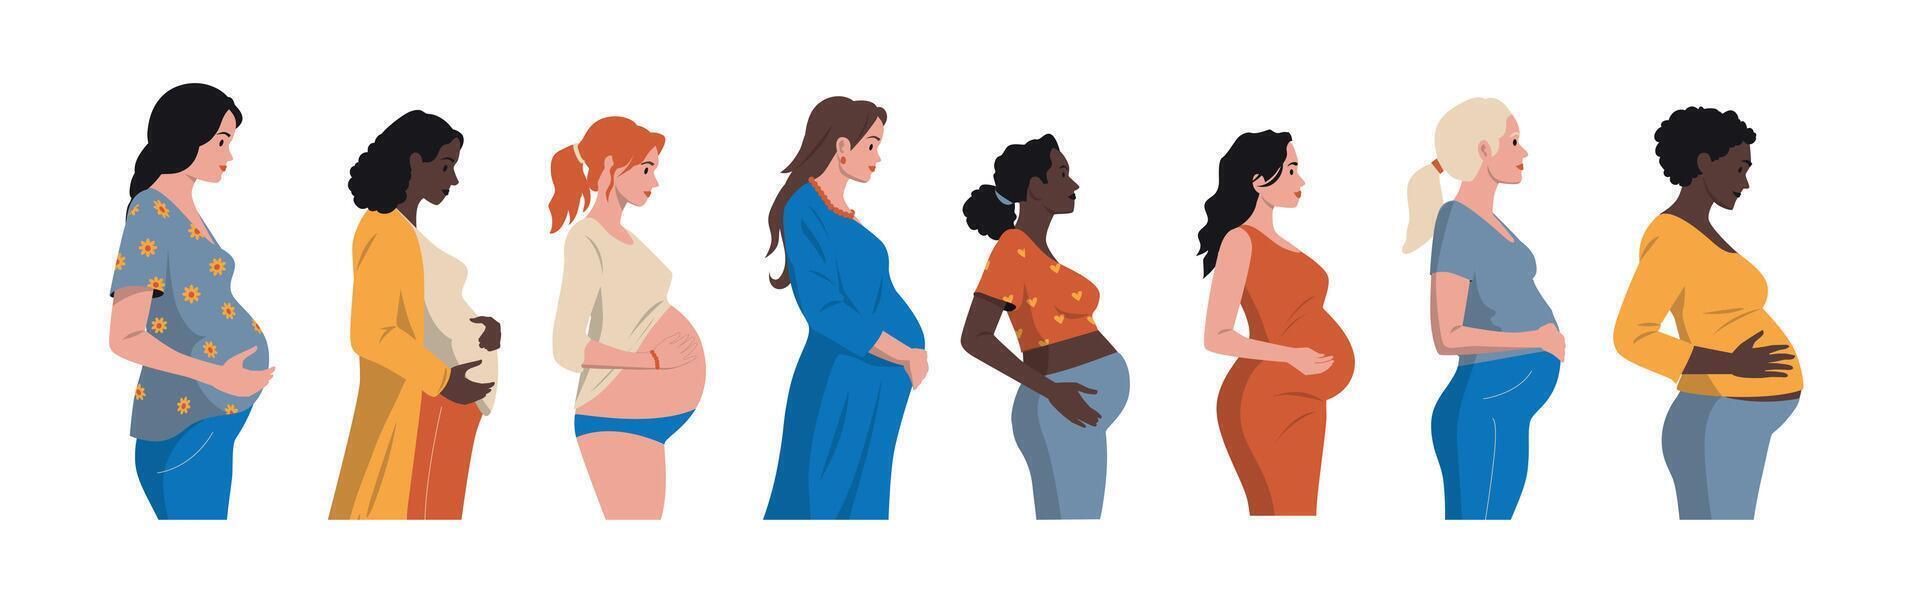 schwanger Frauen Satz. Frau erwartungsvoll Baby, Mutter halten neugeboren, multikulturell Mutterschaft mit vielfältig Kleider und Zubehör. Vektor einstellen